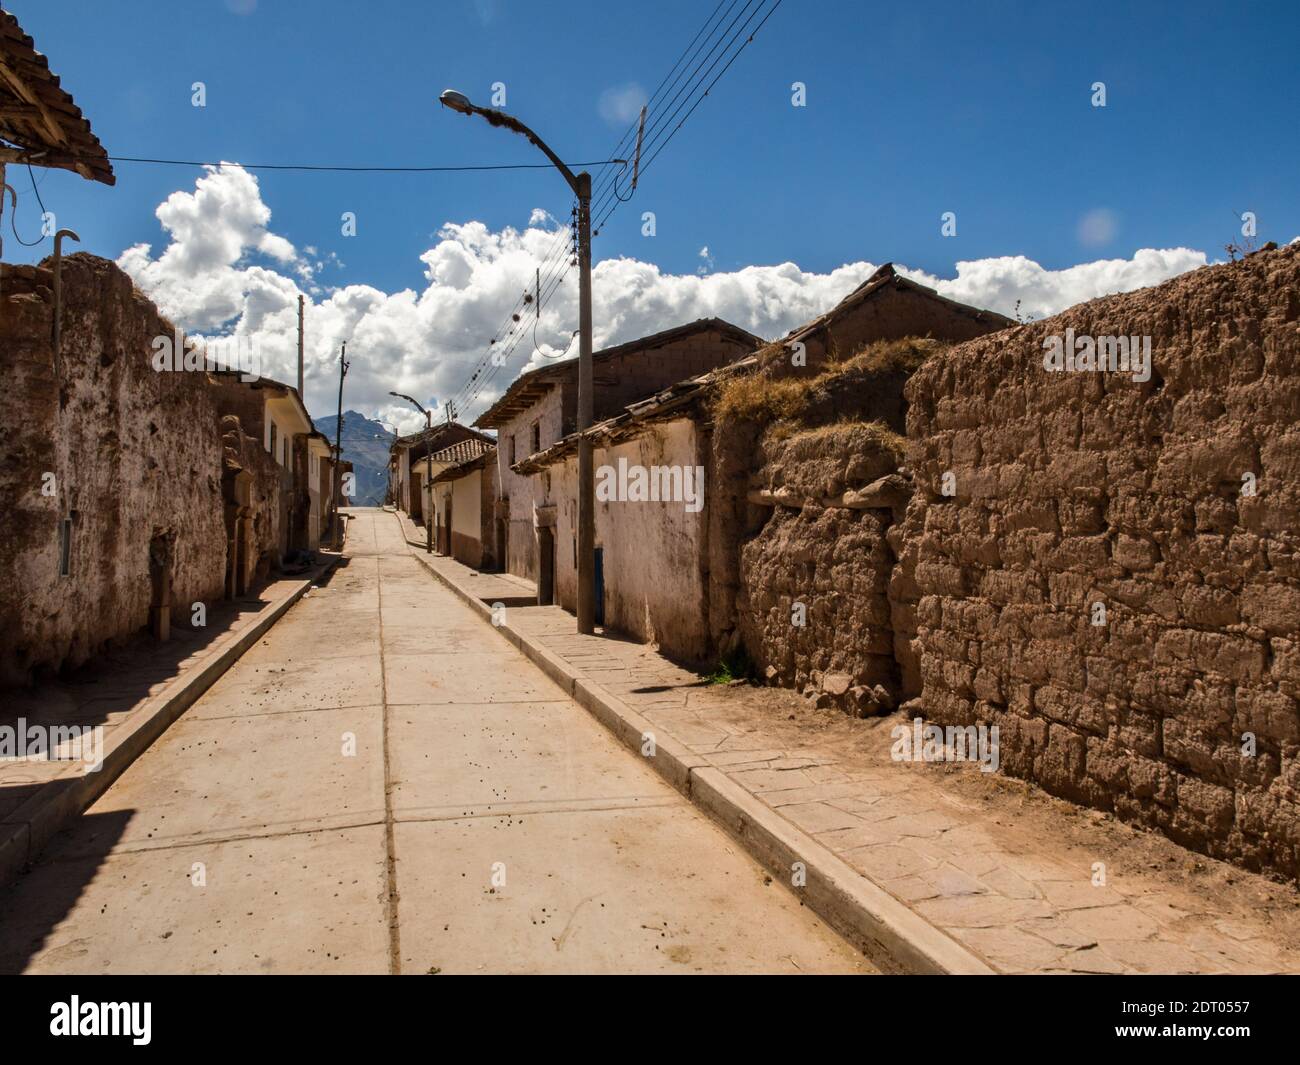 Maras, Perú 20 de mayo de 2016: Calle en Moras. Las casas de la población  rural pobre están hechas de materiales locales, con suelos de tierra  embalada, paredes de adobe y da